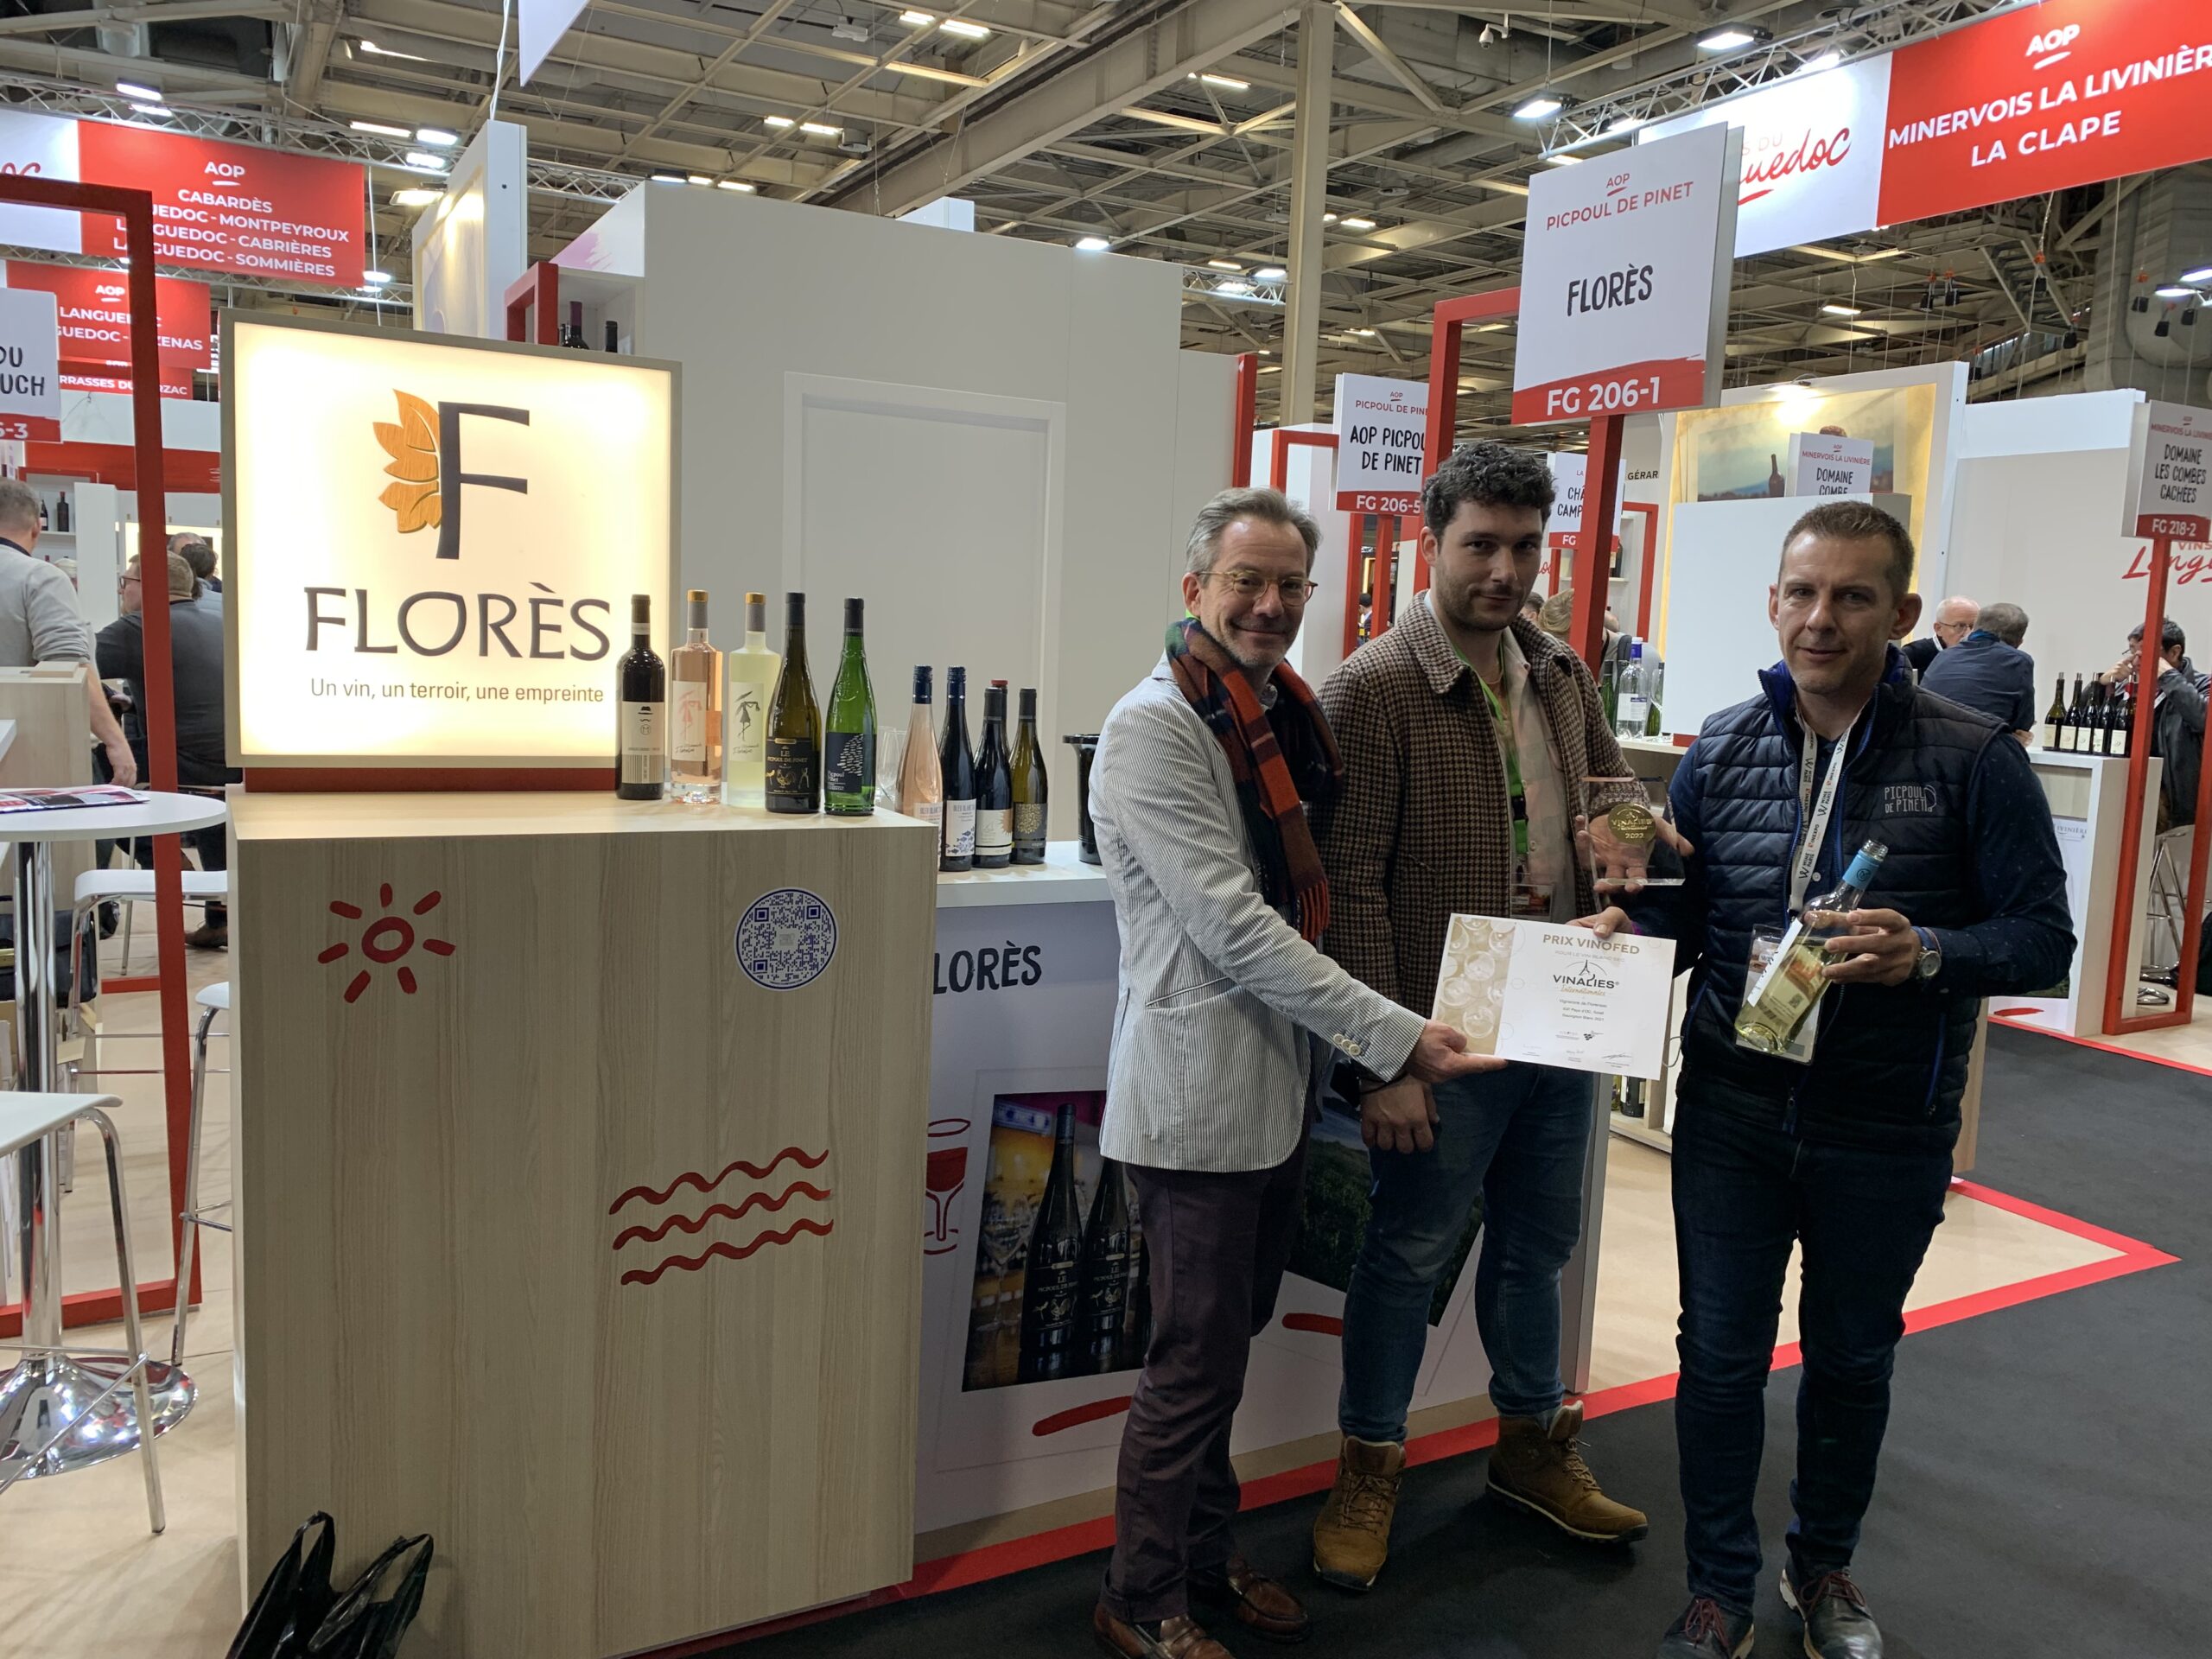 Photographie du stand de Florès où trois responsables Florès présente le Sauvignon Blanc élu Meilleur vin sec du Monde et sa médaille